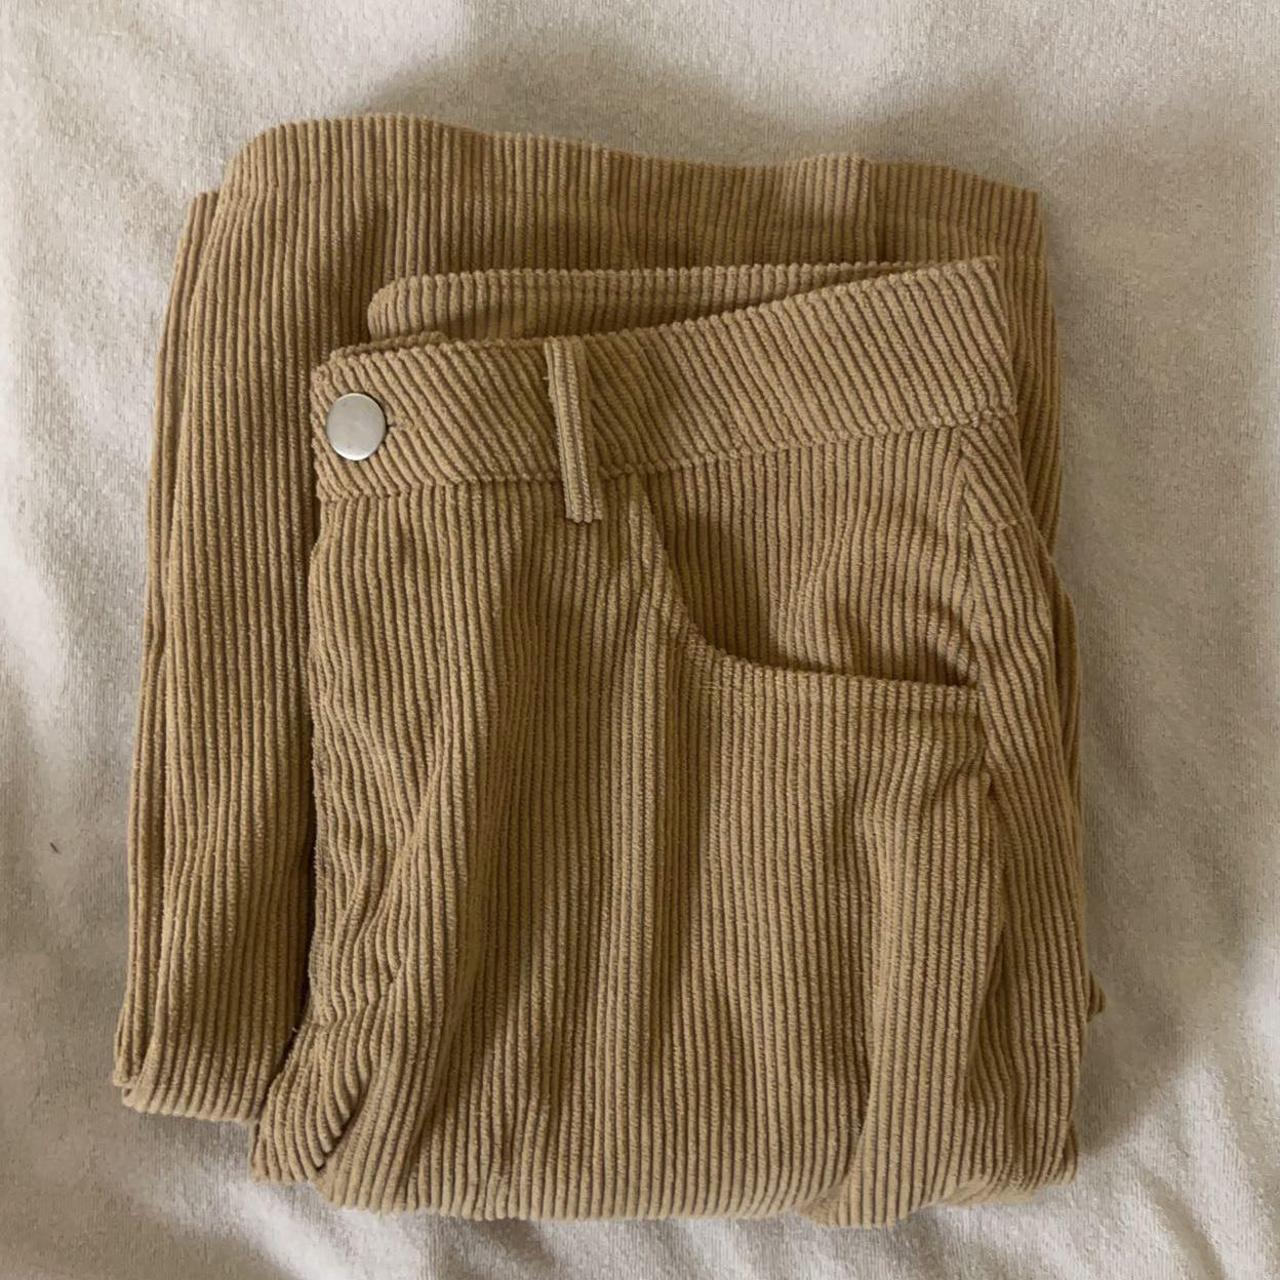 brown/tan baggy corduroy pants! NO brand, SIZE - Depop